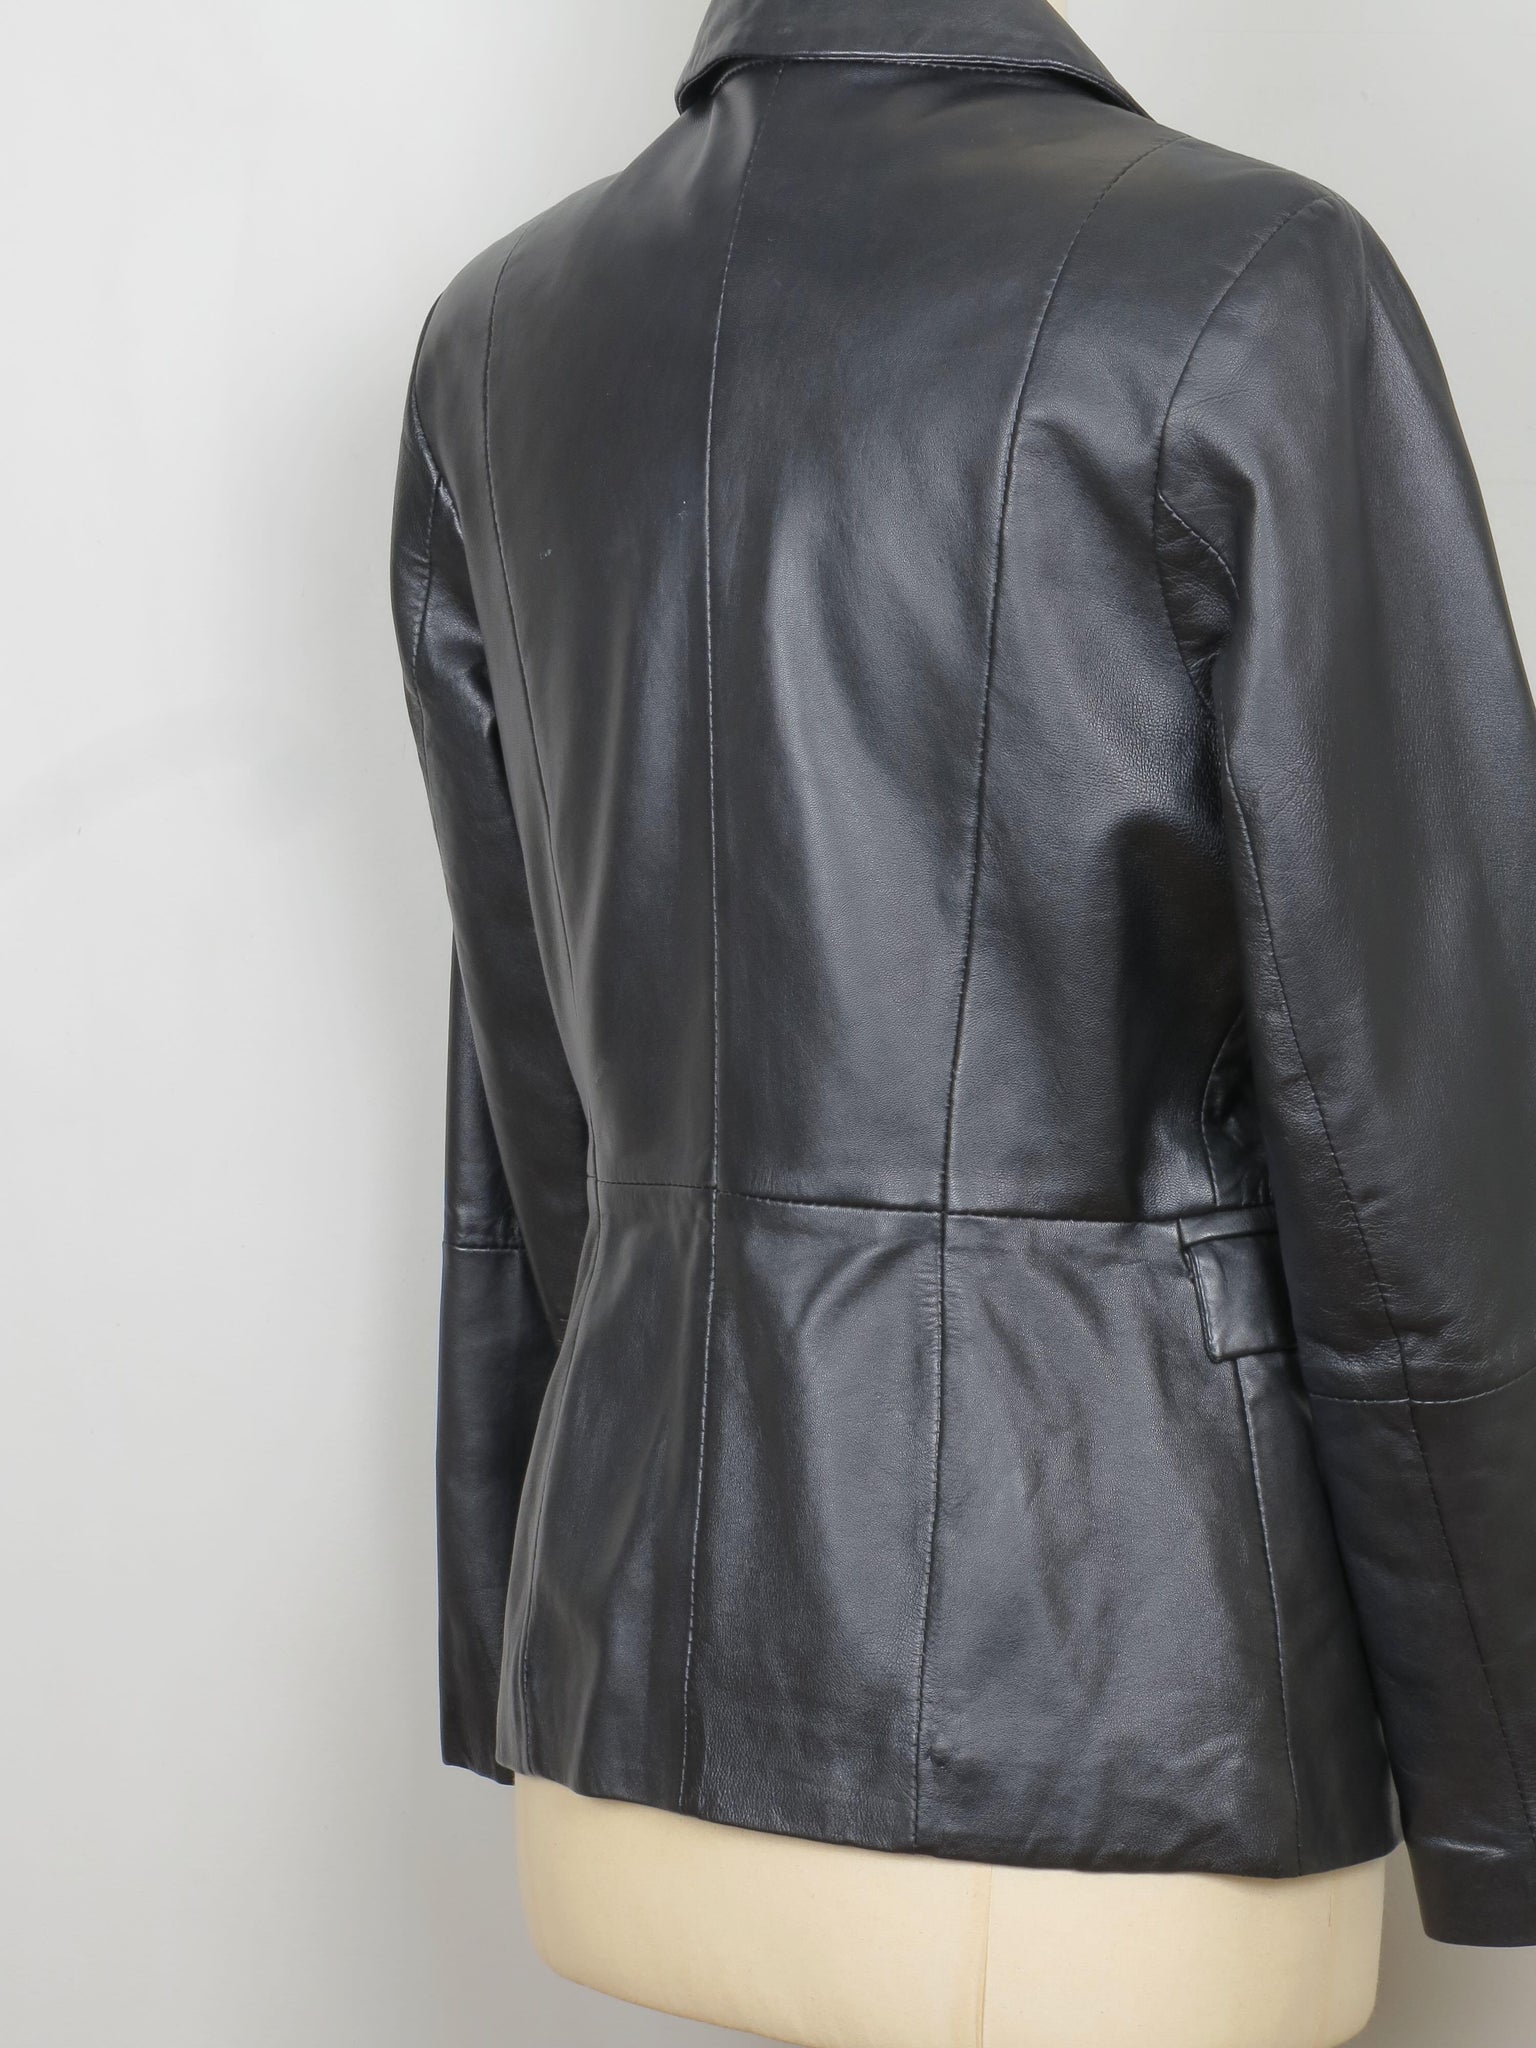 Women's Black Leather Vintage Jacket S/M - The Harlequin